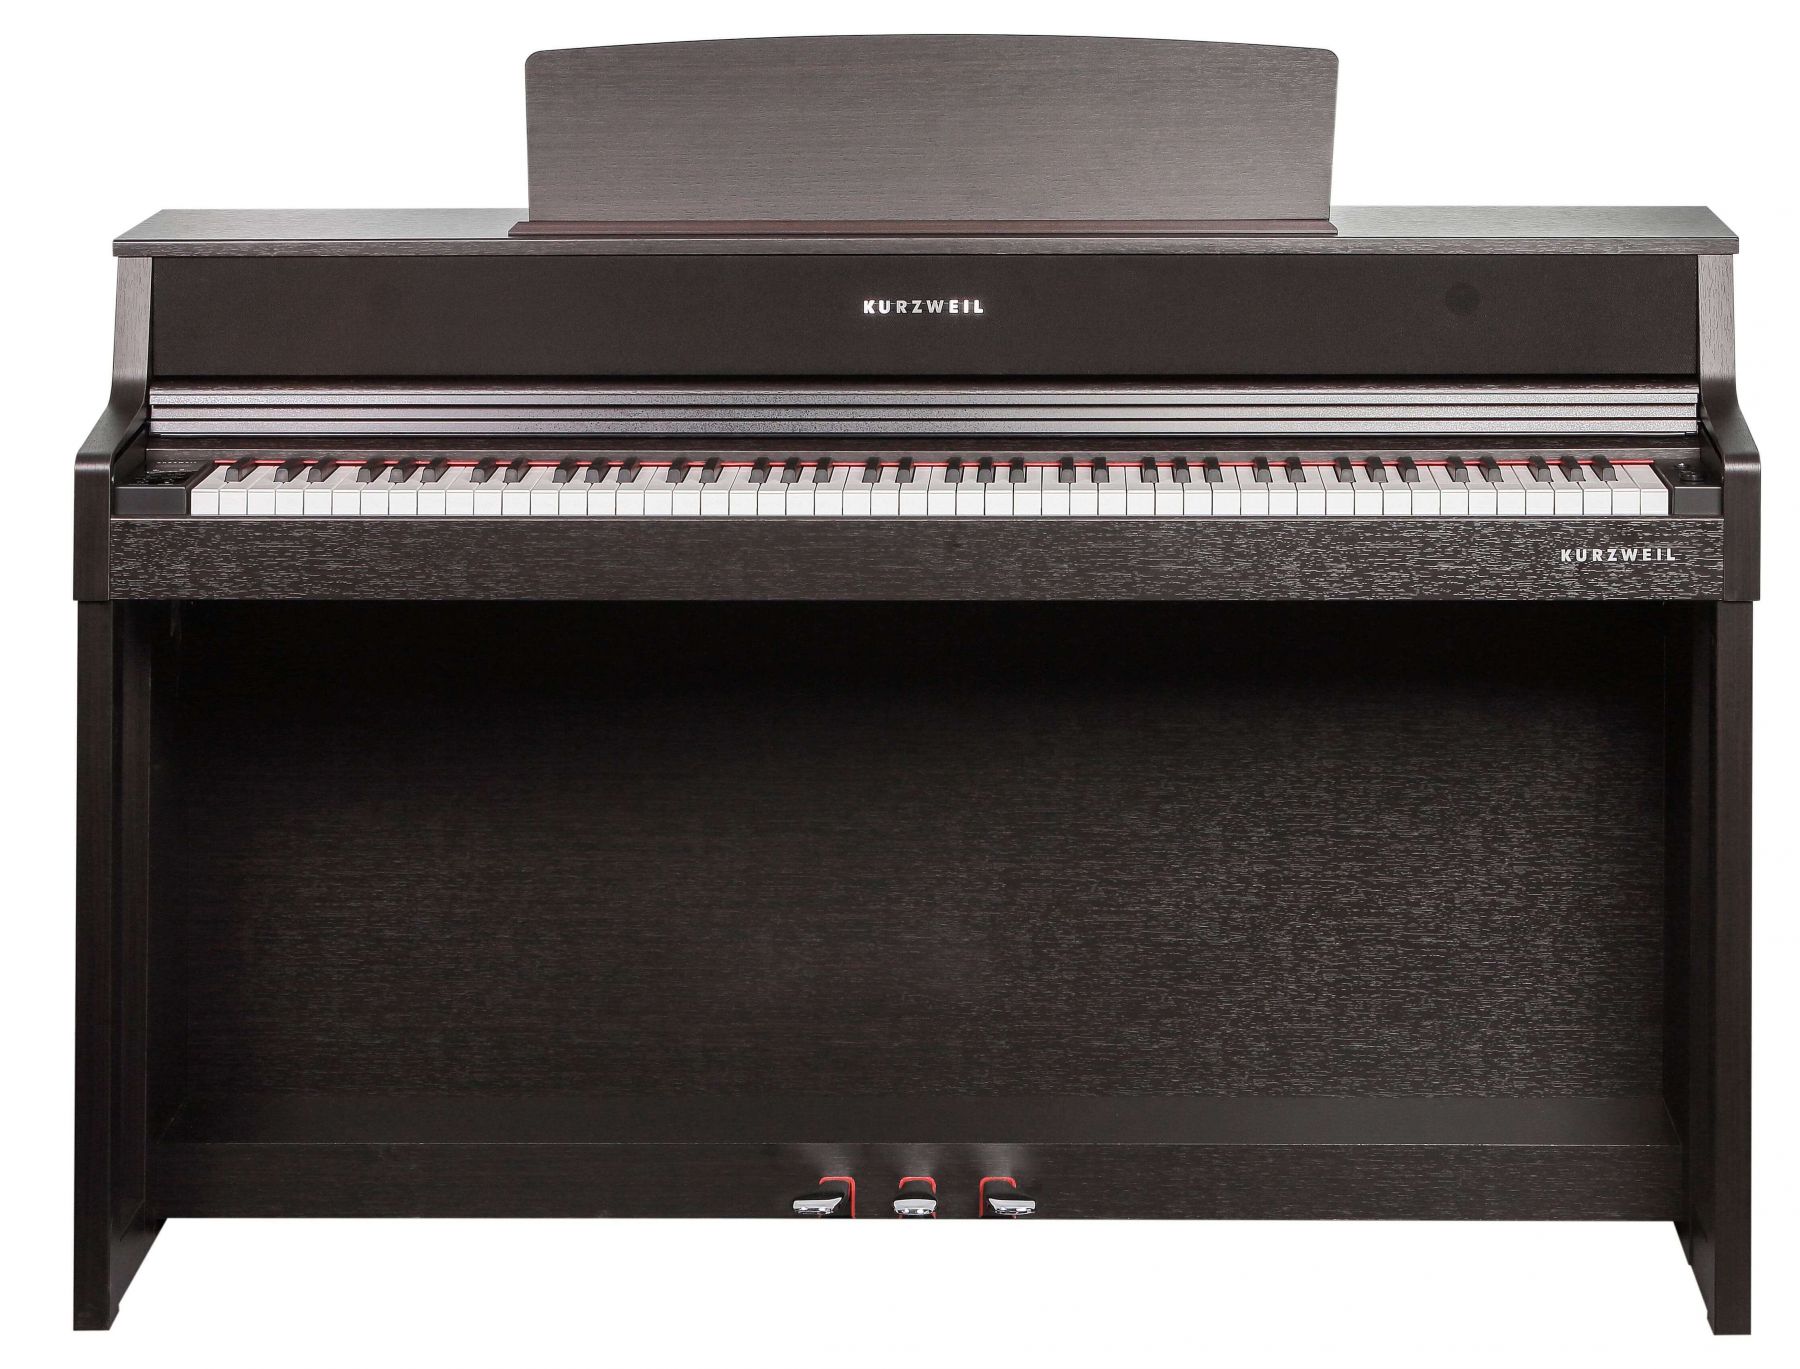 Цифровые пианино Kurzweil CUP410 SR 88 клавишной клавиатурой электронных пианино крышка pleuche липучки украшен бахромой красивые